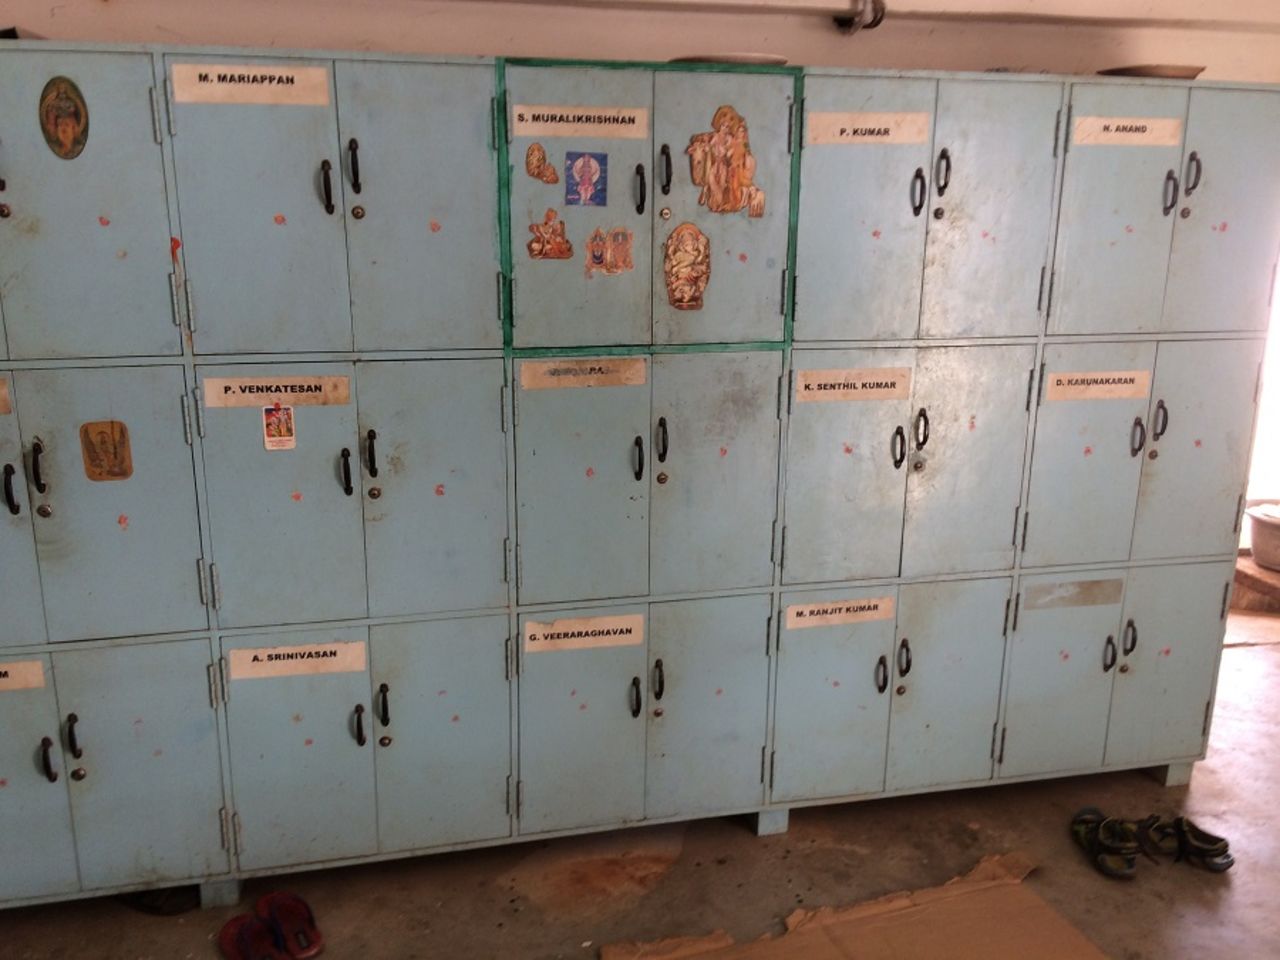 Lockers of the groundstaff at MA Chidambaram stadium, Chennai, December 14, 2016